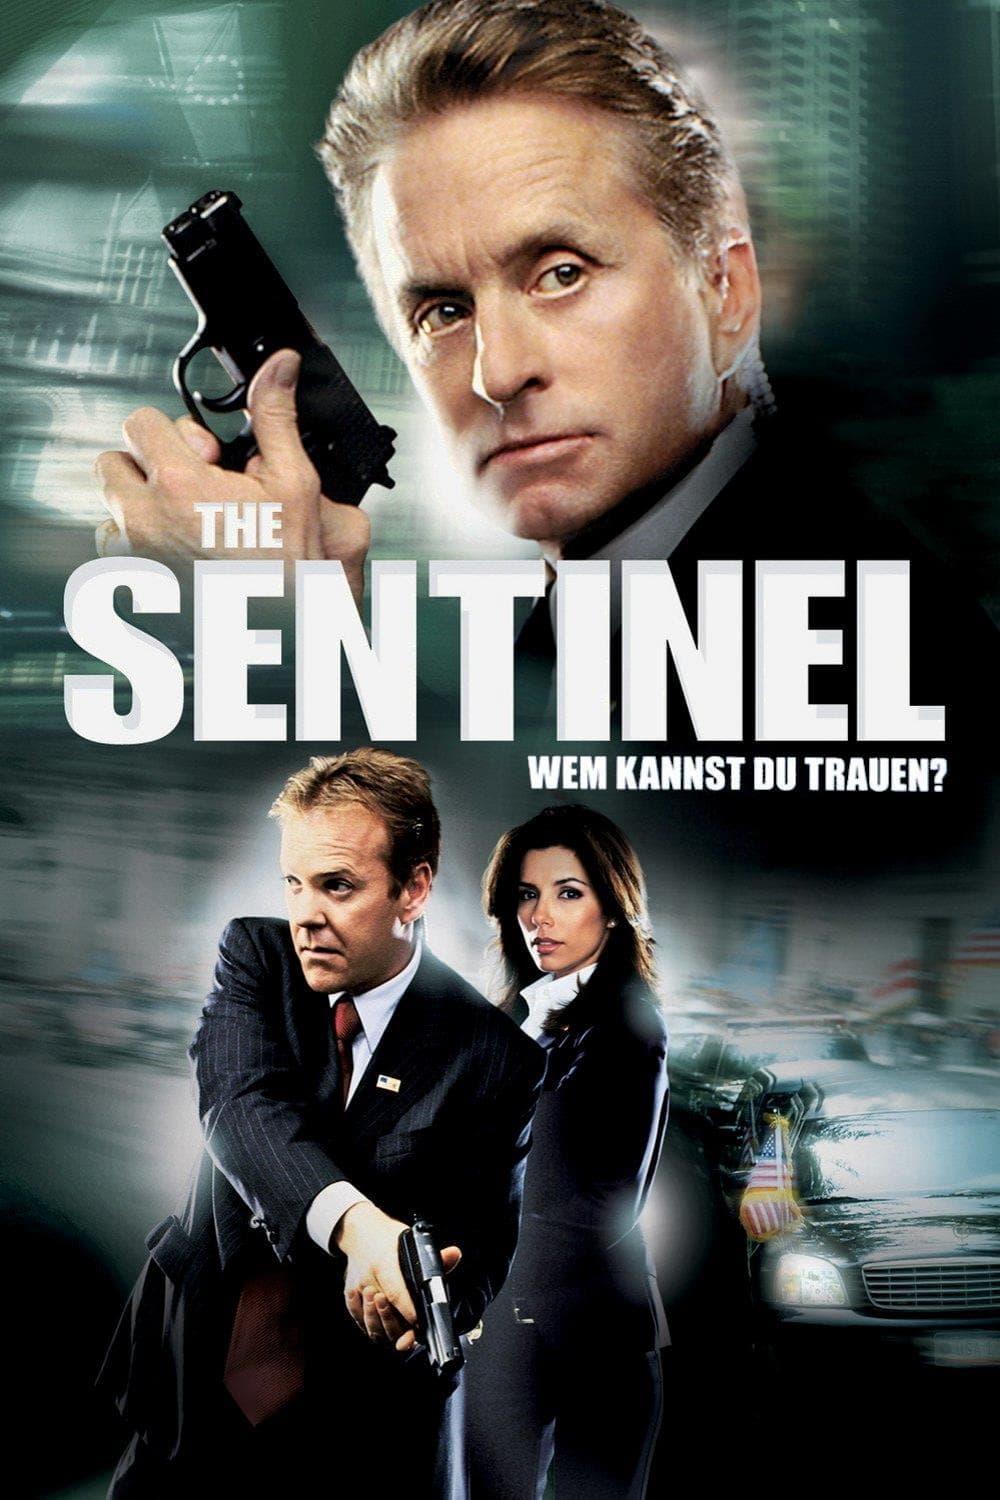 The Sentinel - Wem kannst du trauen? poster